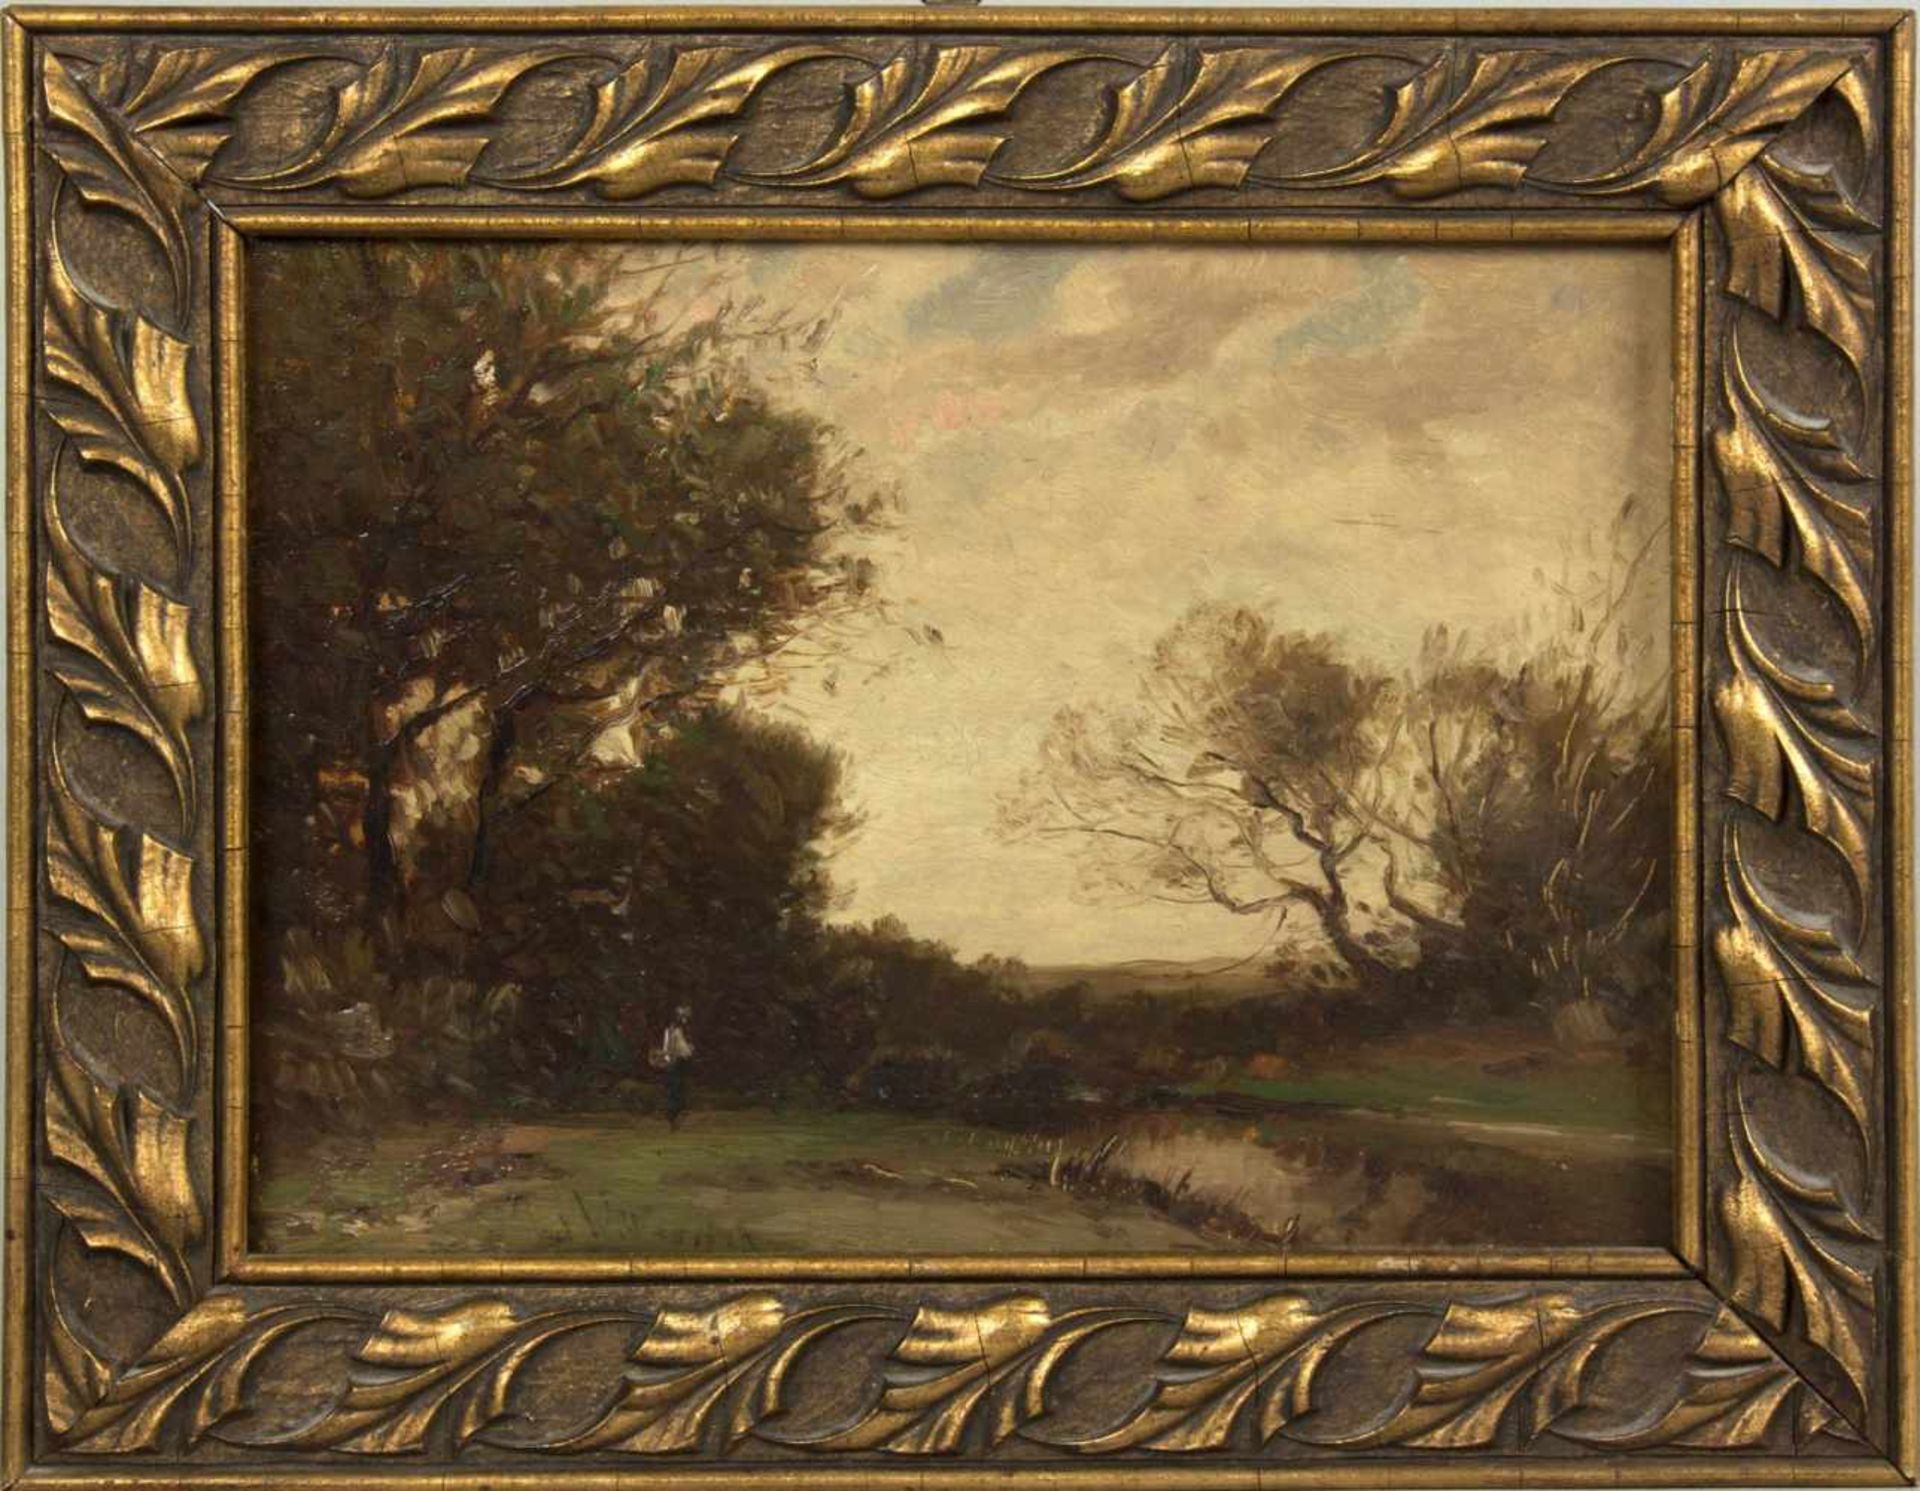 WillroiderHerbstliche Landschaft mit einem See. Öl/Holz. Sign. 23,5 x 30,5 cm. Gerahmt. - Bild 3 aus 3